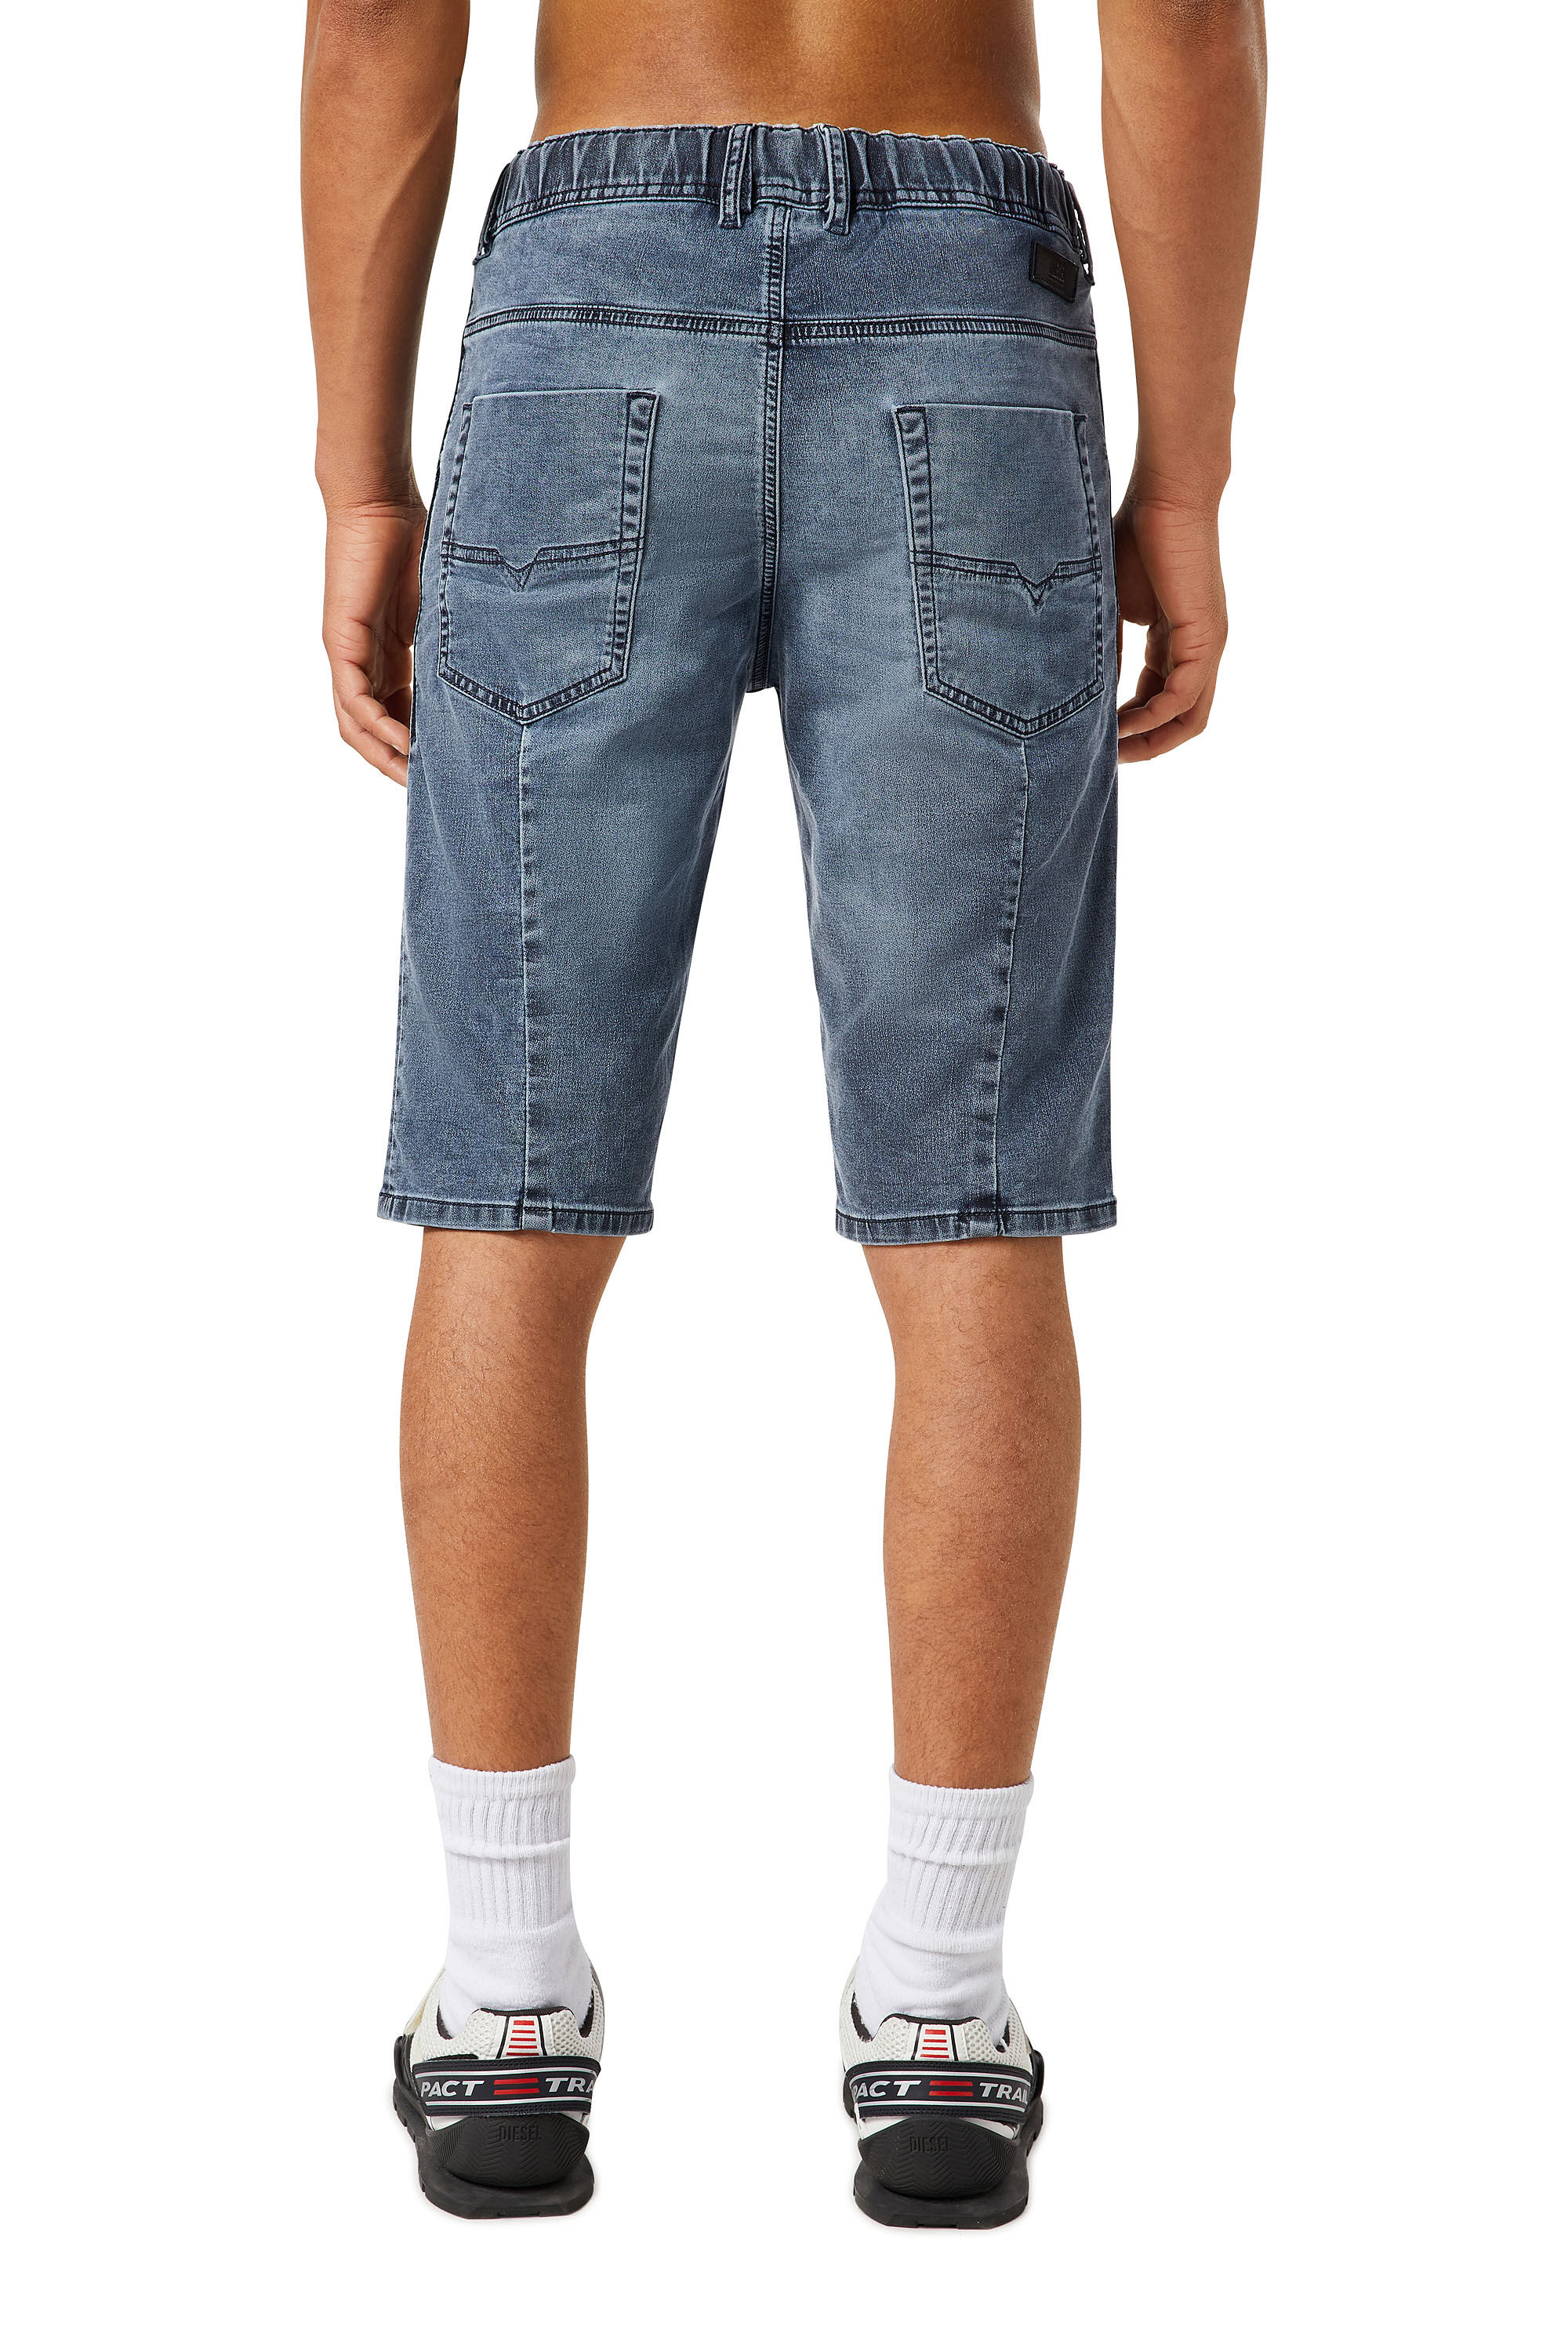 【大人気】DIESEL  jogg jeans short pants